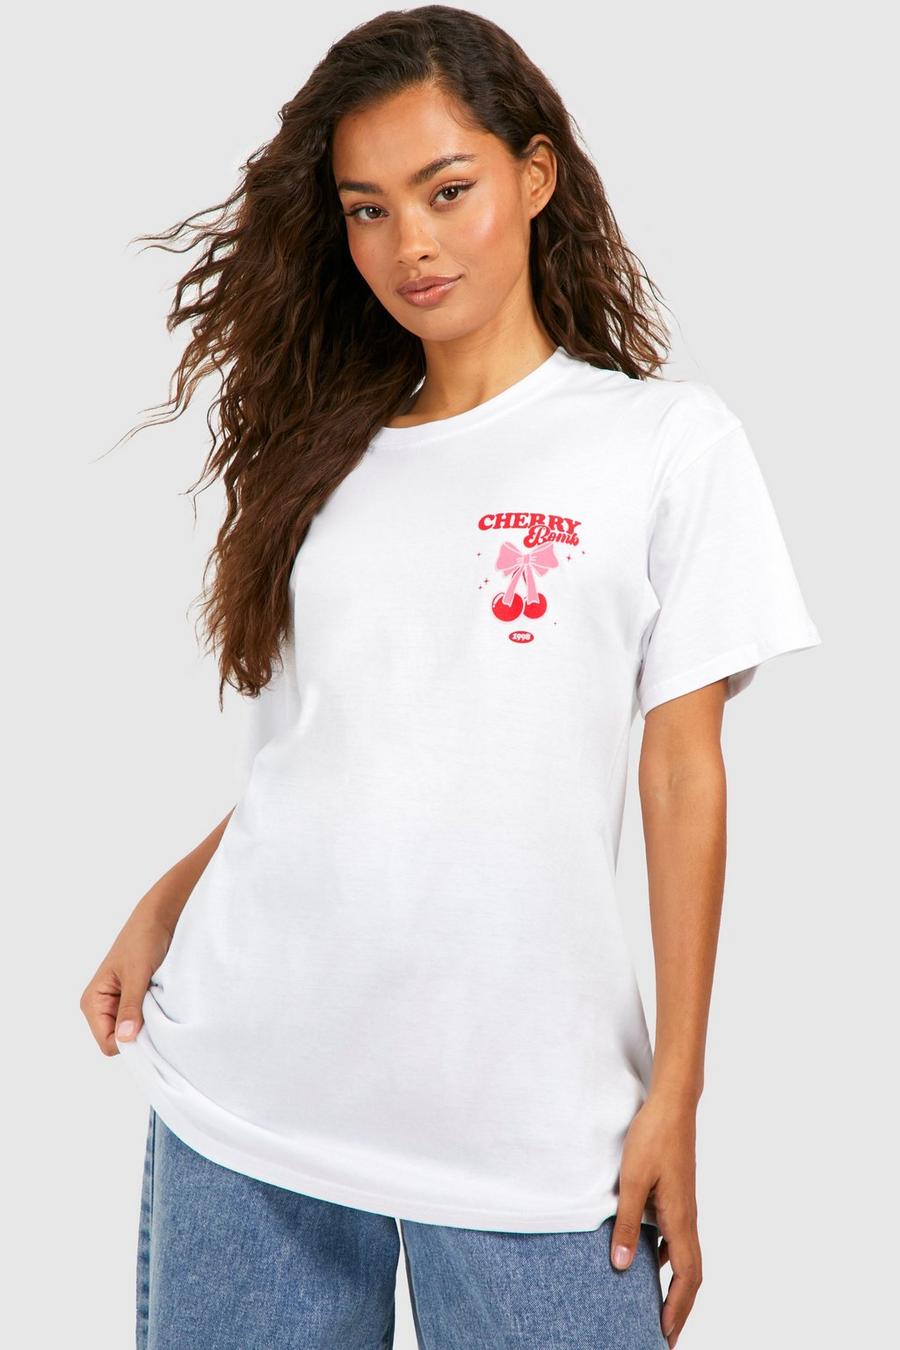 White Oversized Katoenen Cherry Bomb T-Shirt Met Borstopdruk